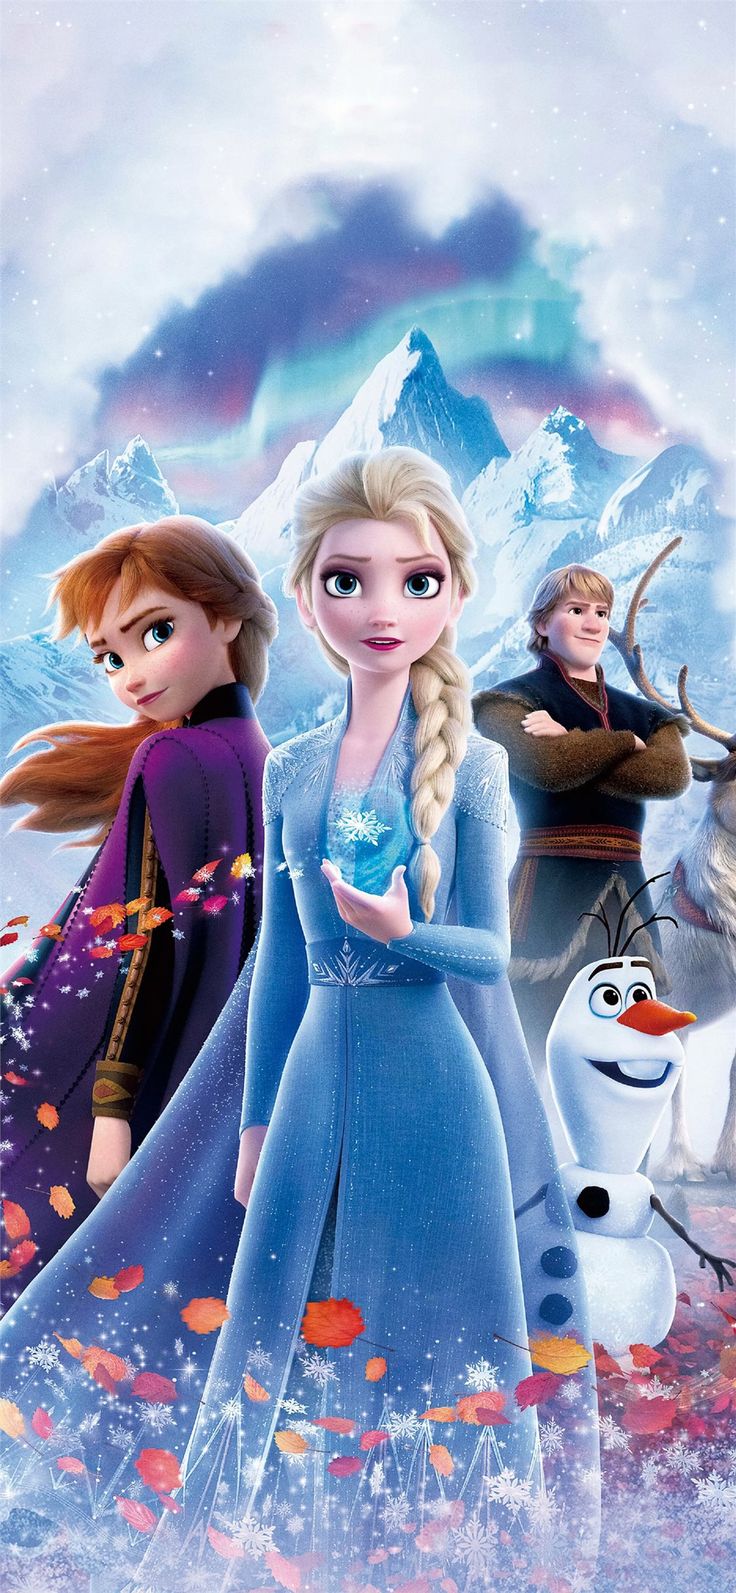 frozen 2 poster 4k iPhone X Wallpaper. Frozen poster, Frozen disney movie, Frozen wallpaper